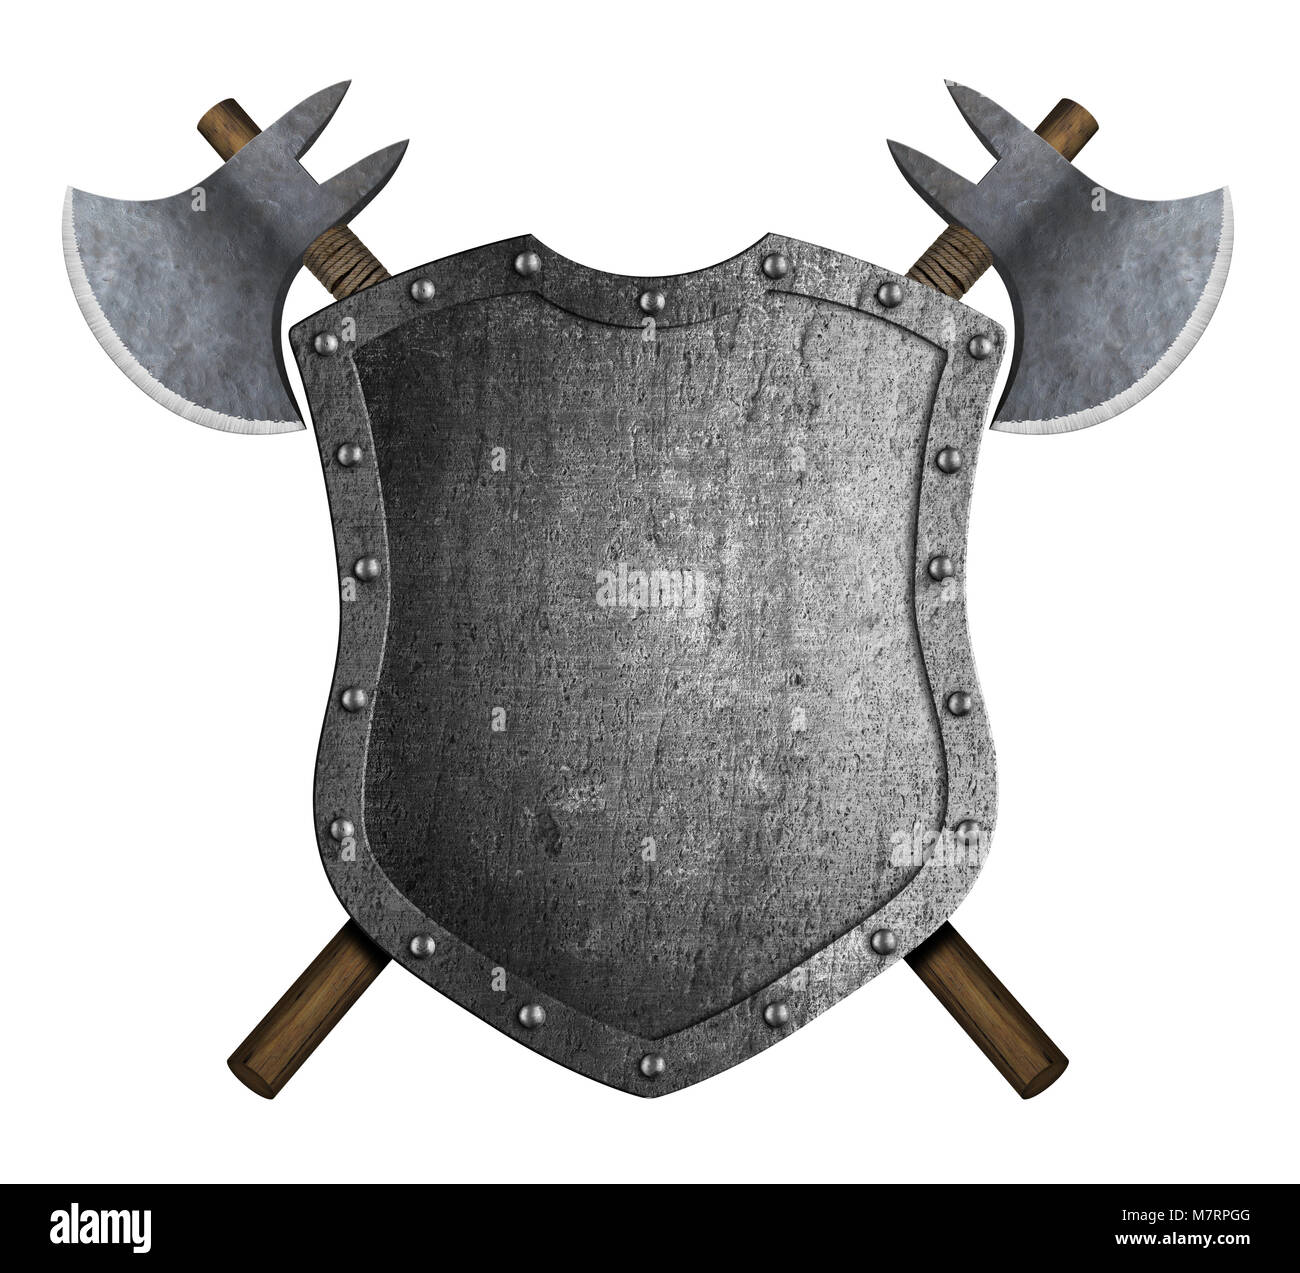 Bouclier héraldique médiévale de métal à la croisée des axes de bataille isolated on white Banque D'Images